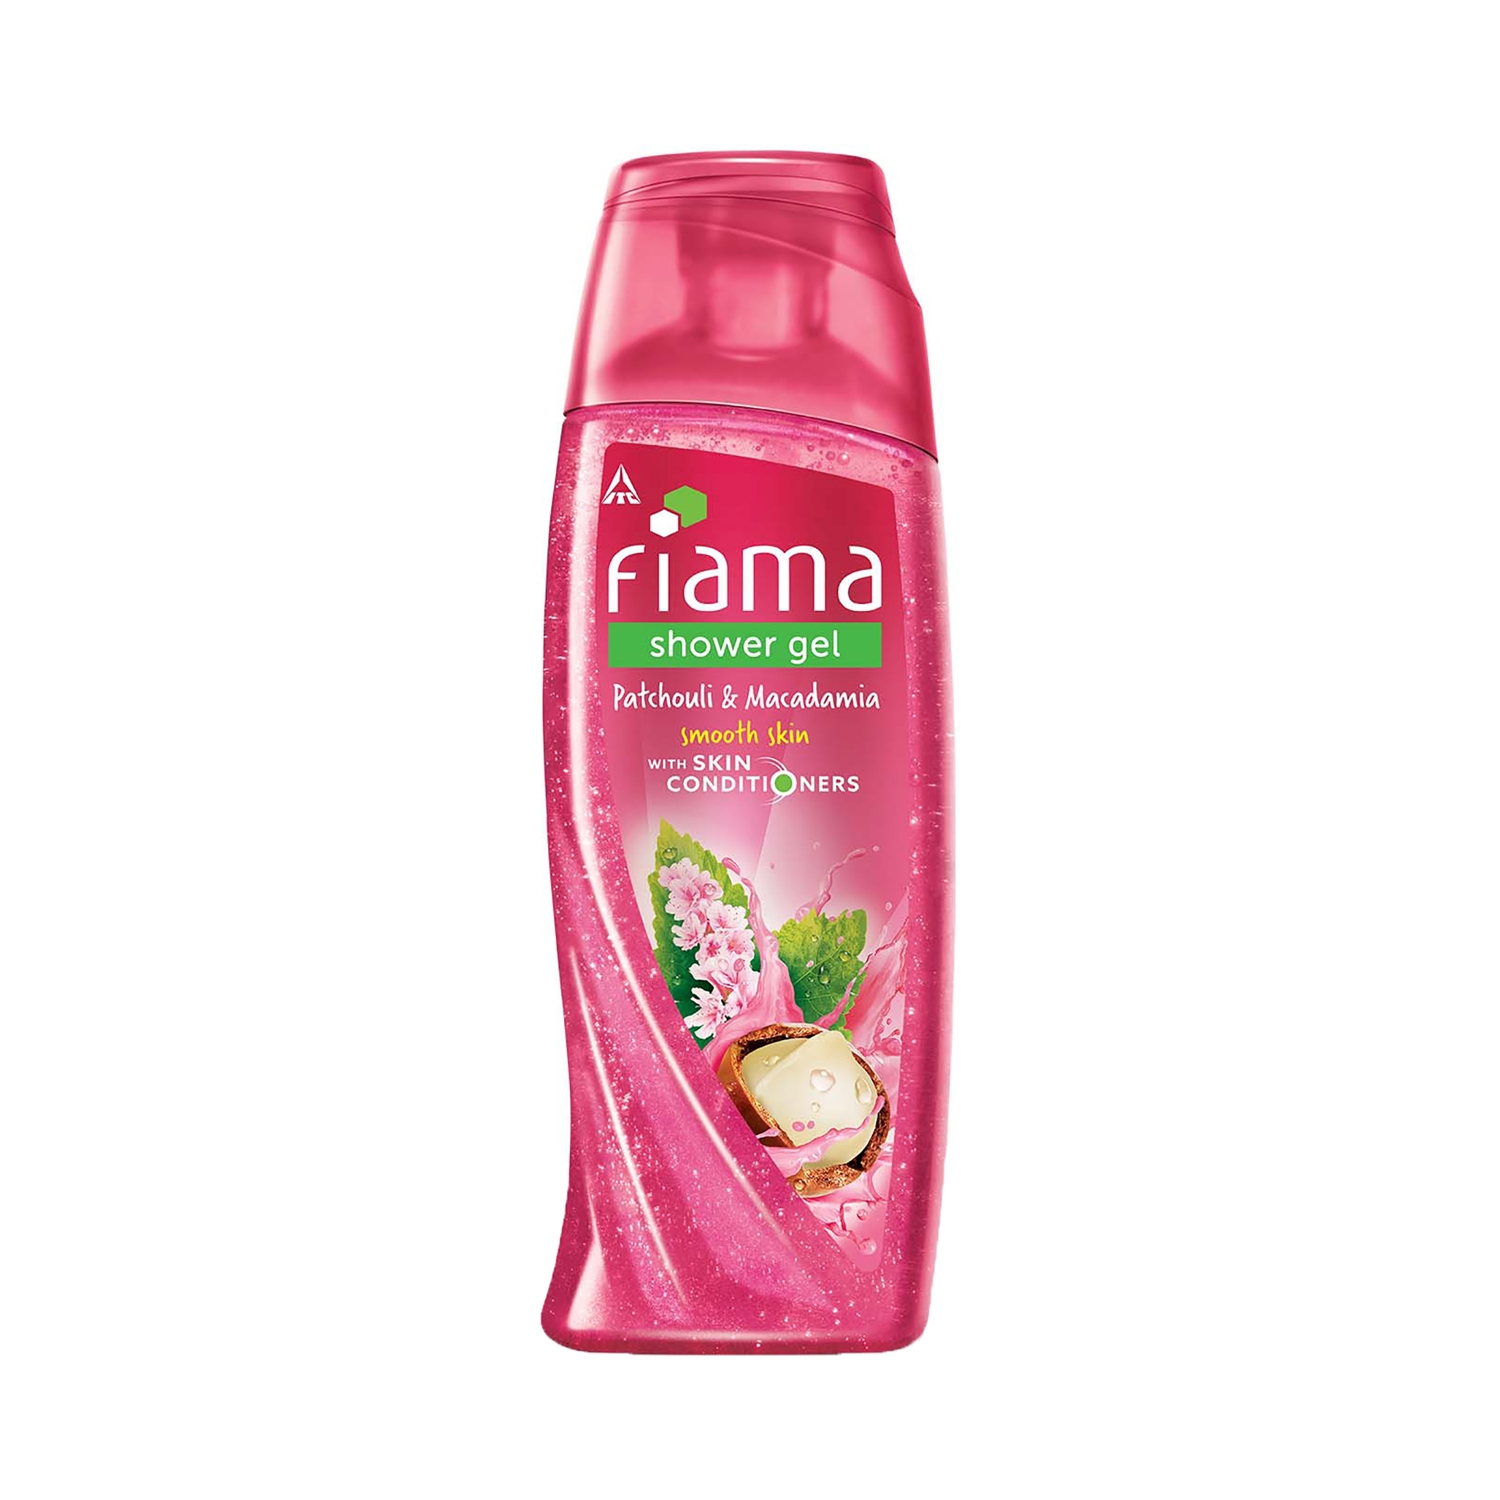 Fiama | Fiama Patchouli & Macadamia Shower Gel With Skin Conditioners (250ml)